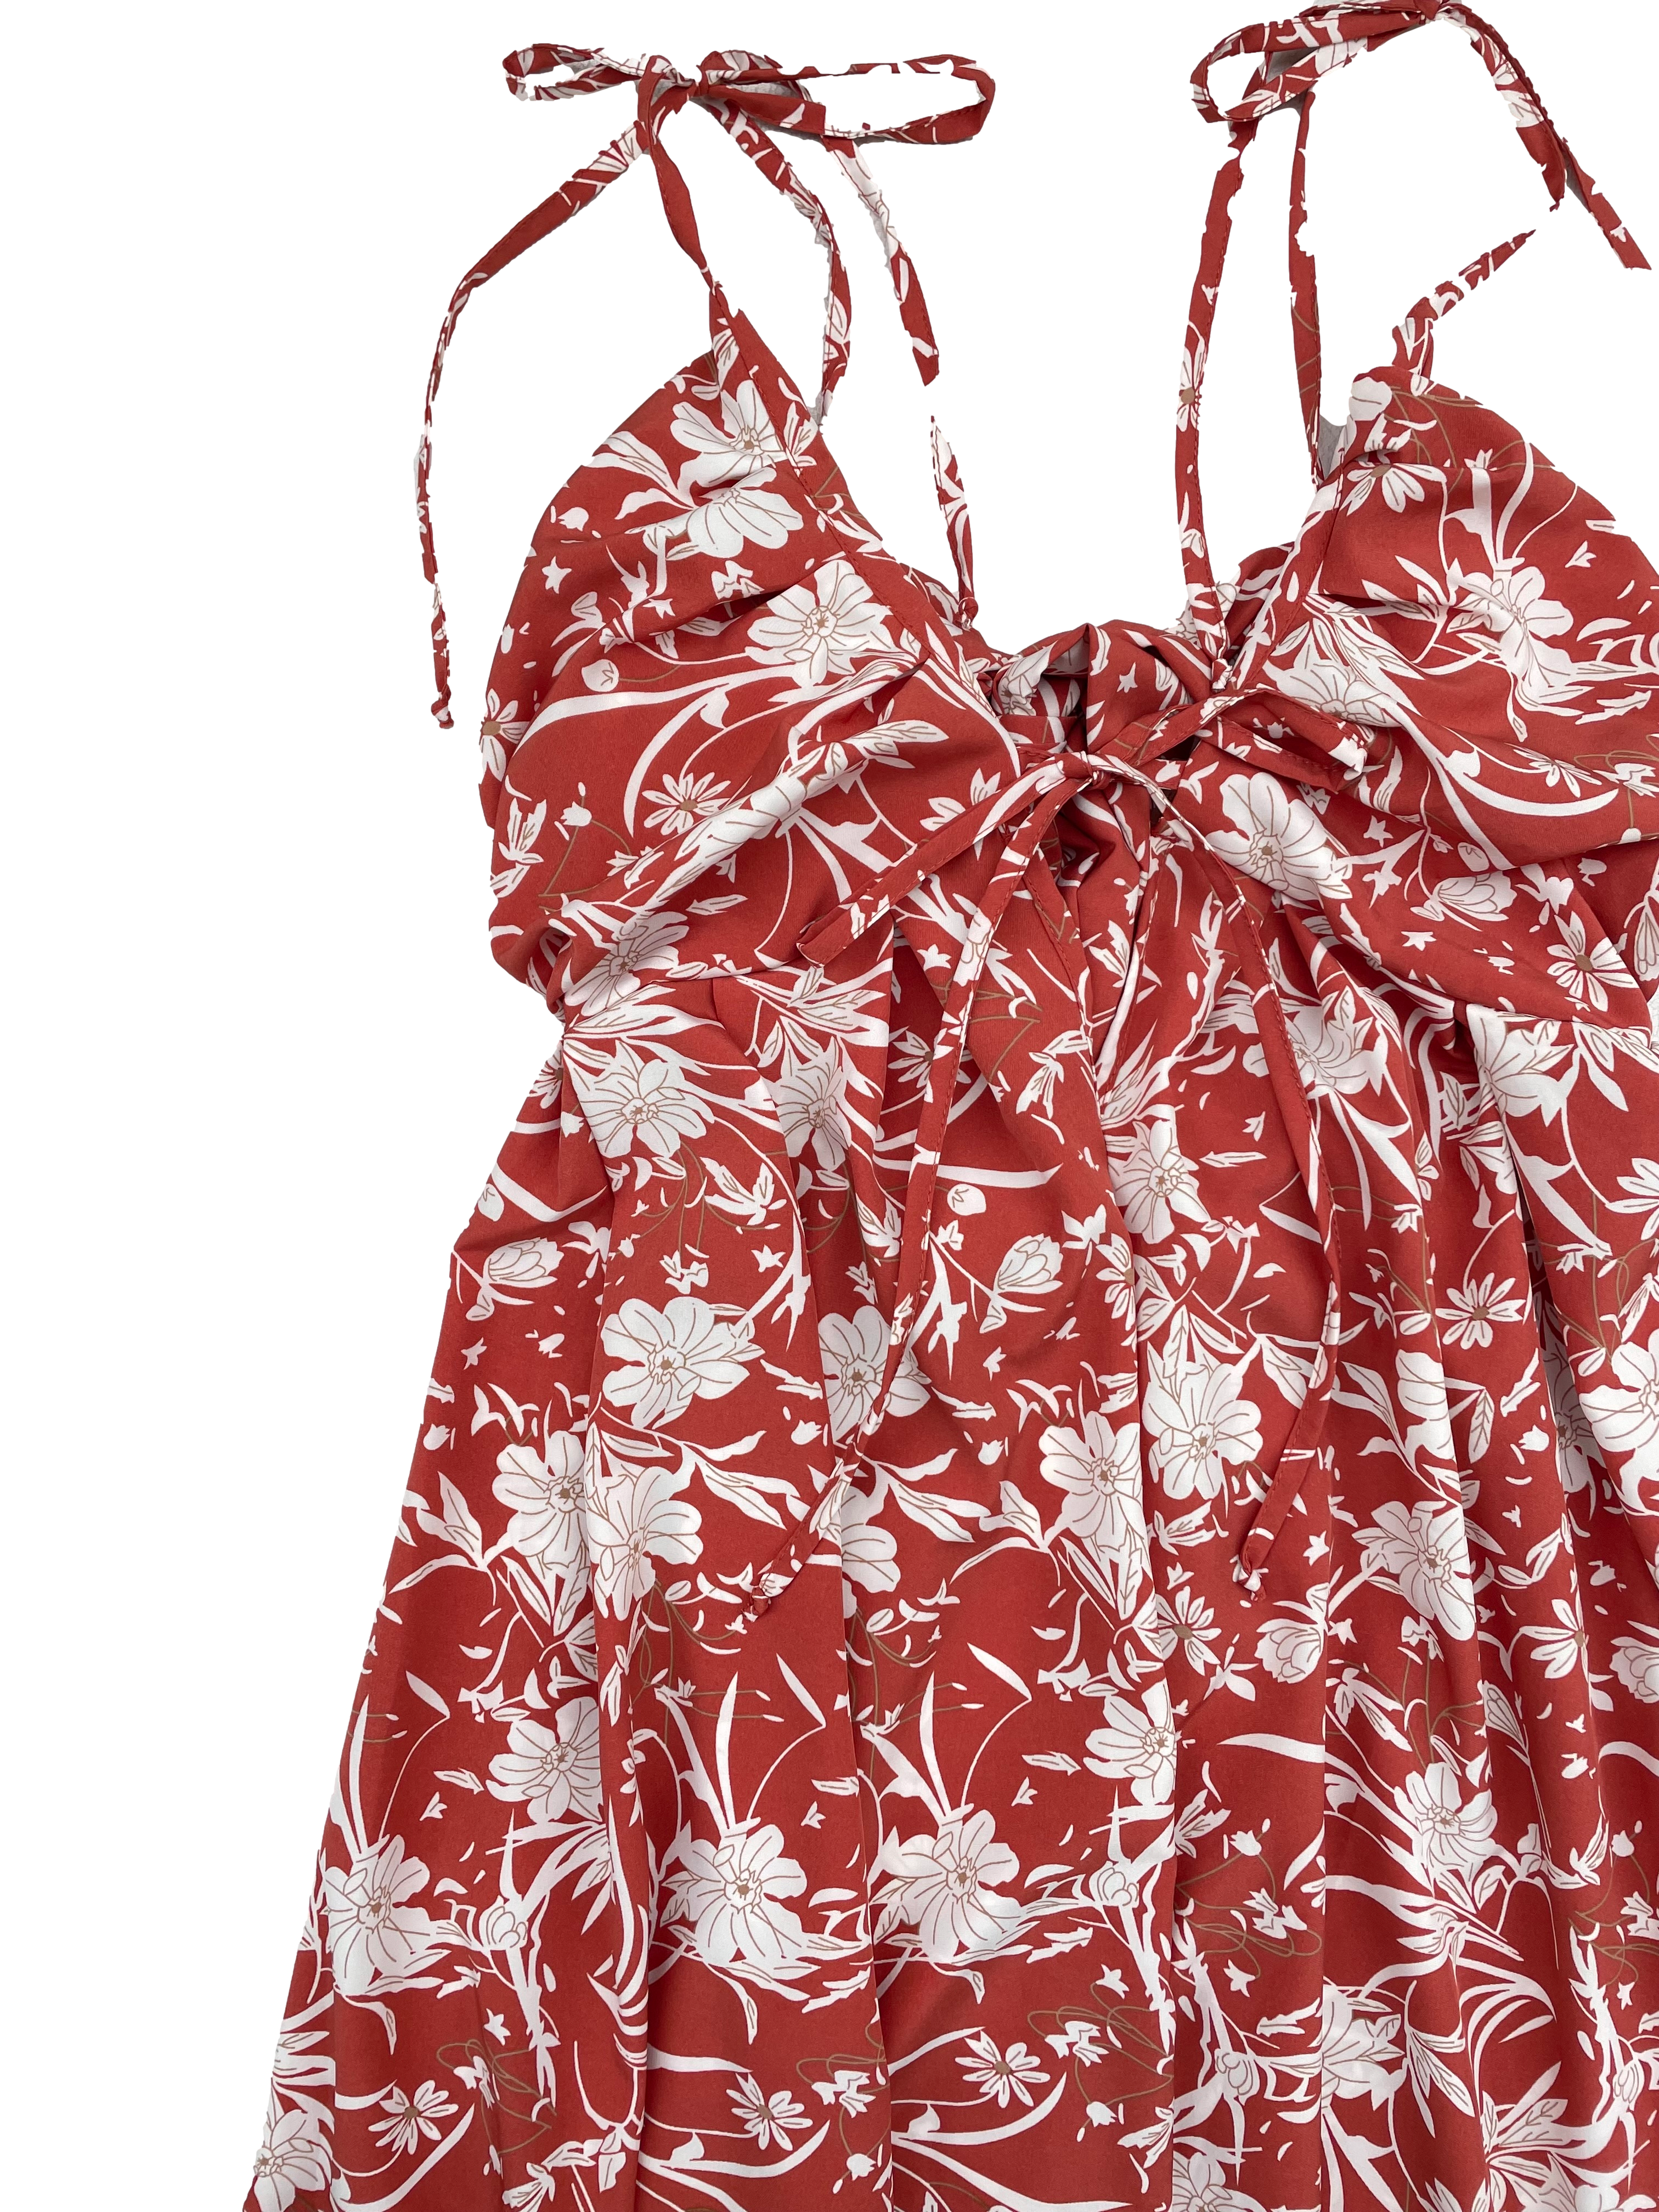 Vestido Bohem tela plana fluida ladrillo con flores crema, se amarra en hombros, espalda y busto, cintura con elástico posterior y falda amplia. Largo 135cm. Nuevo con etiqueta.